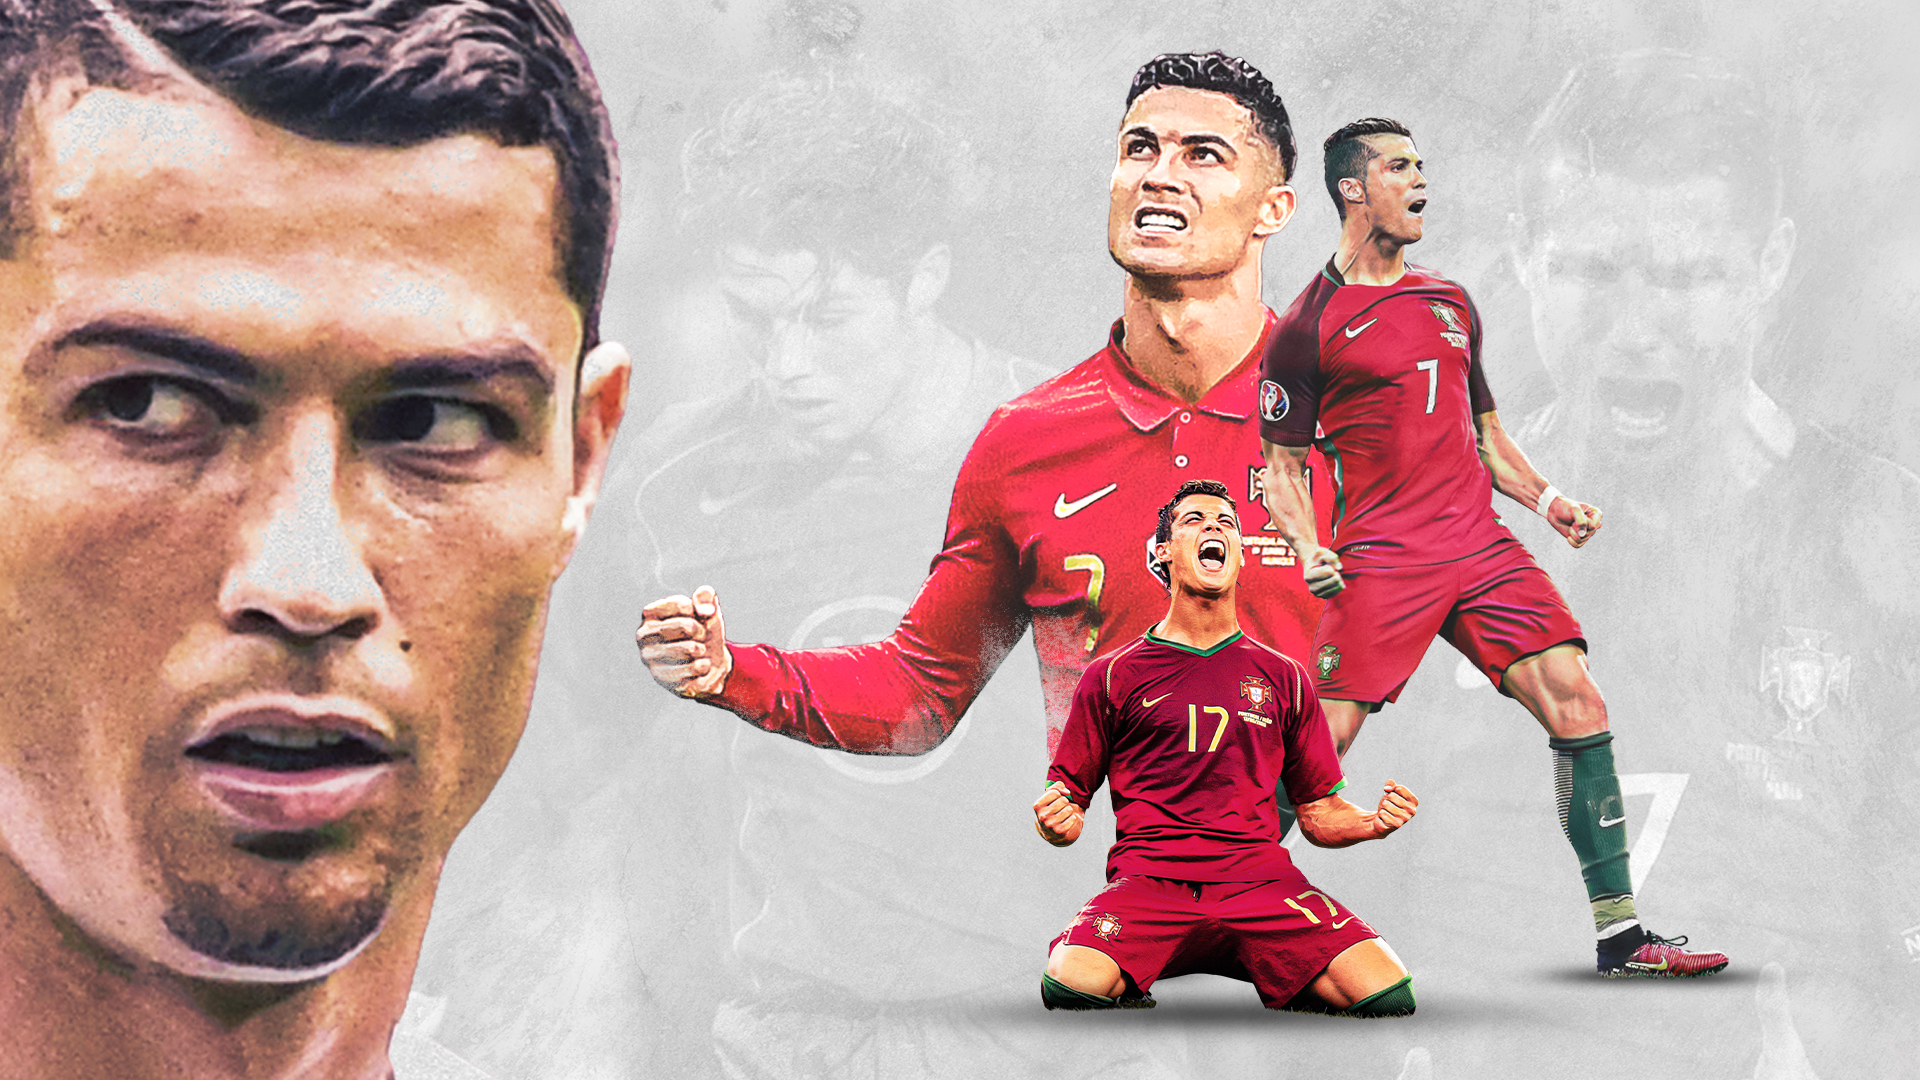 Chia sẻ 100 hình nền đẹp của Cristiano Ronaldo full HD   thptlamnghiepeduvn